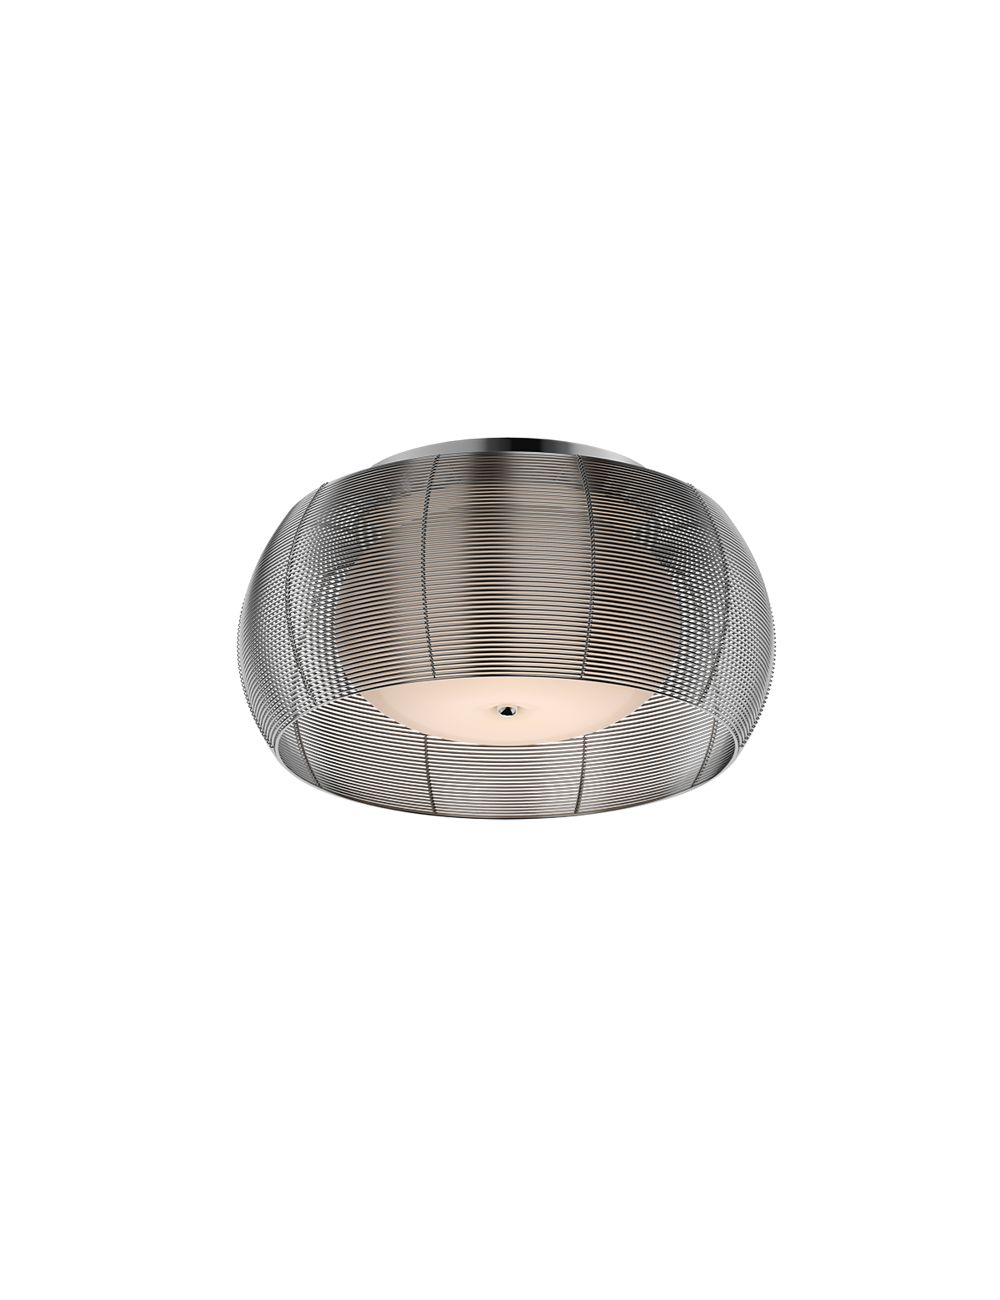 Lampa plafon metalowy z kloszem szklanym srebrny 50 cm Tango MMX1104-2L (silver)